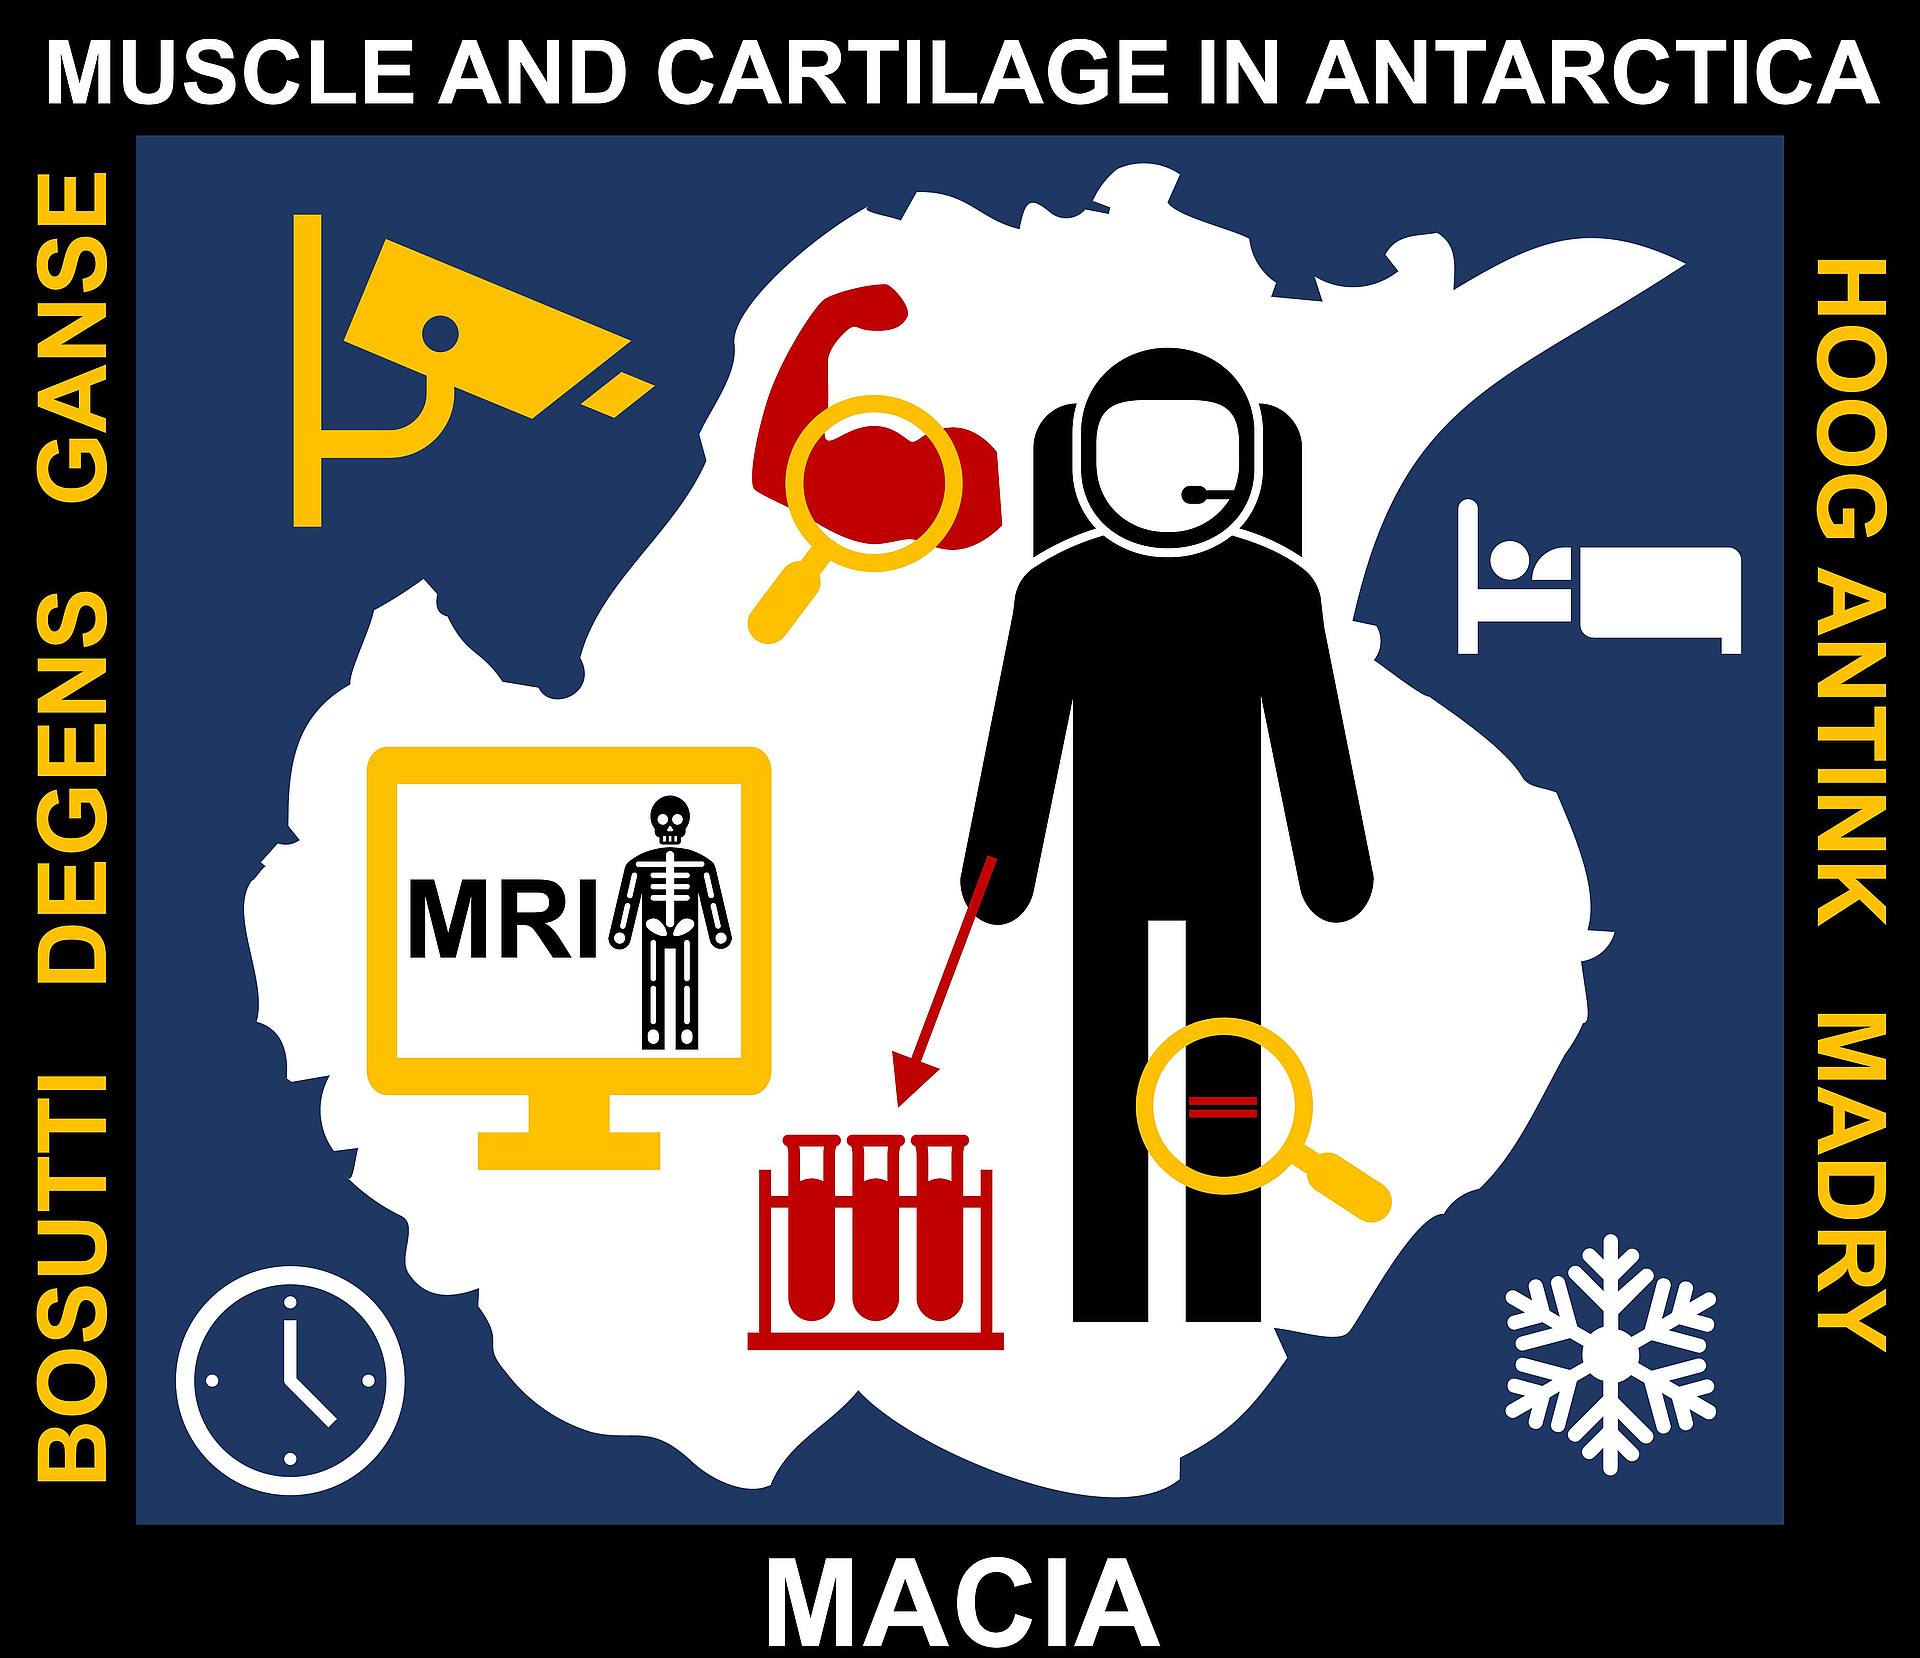 Missions-Patch des Antarktis-Experiments MACIA